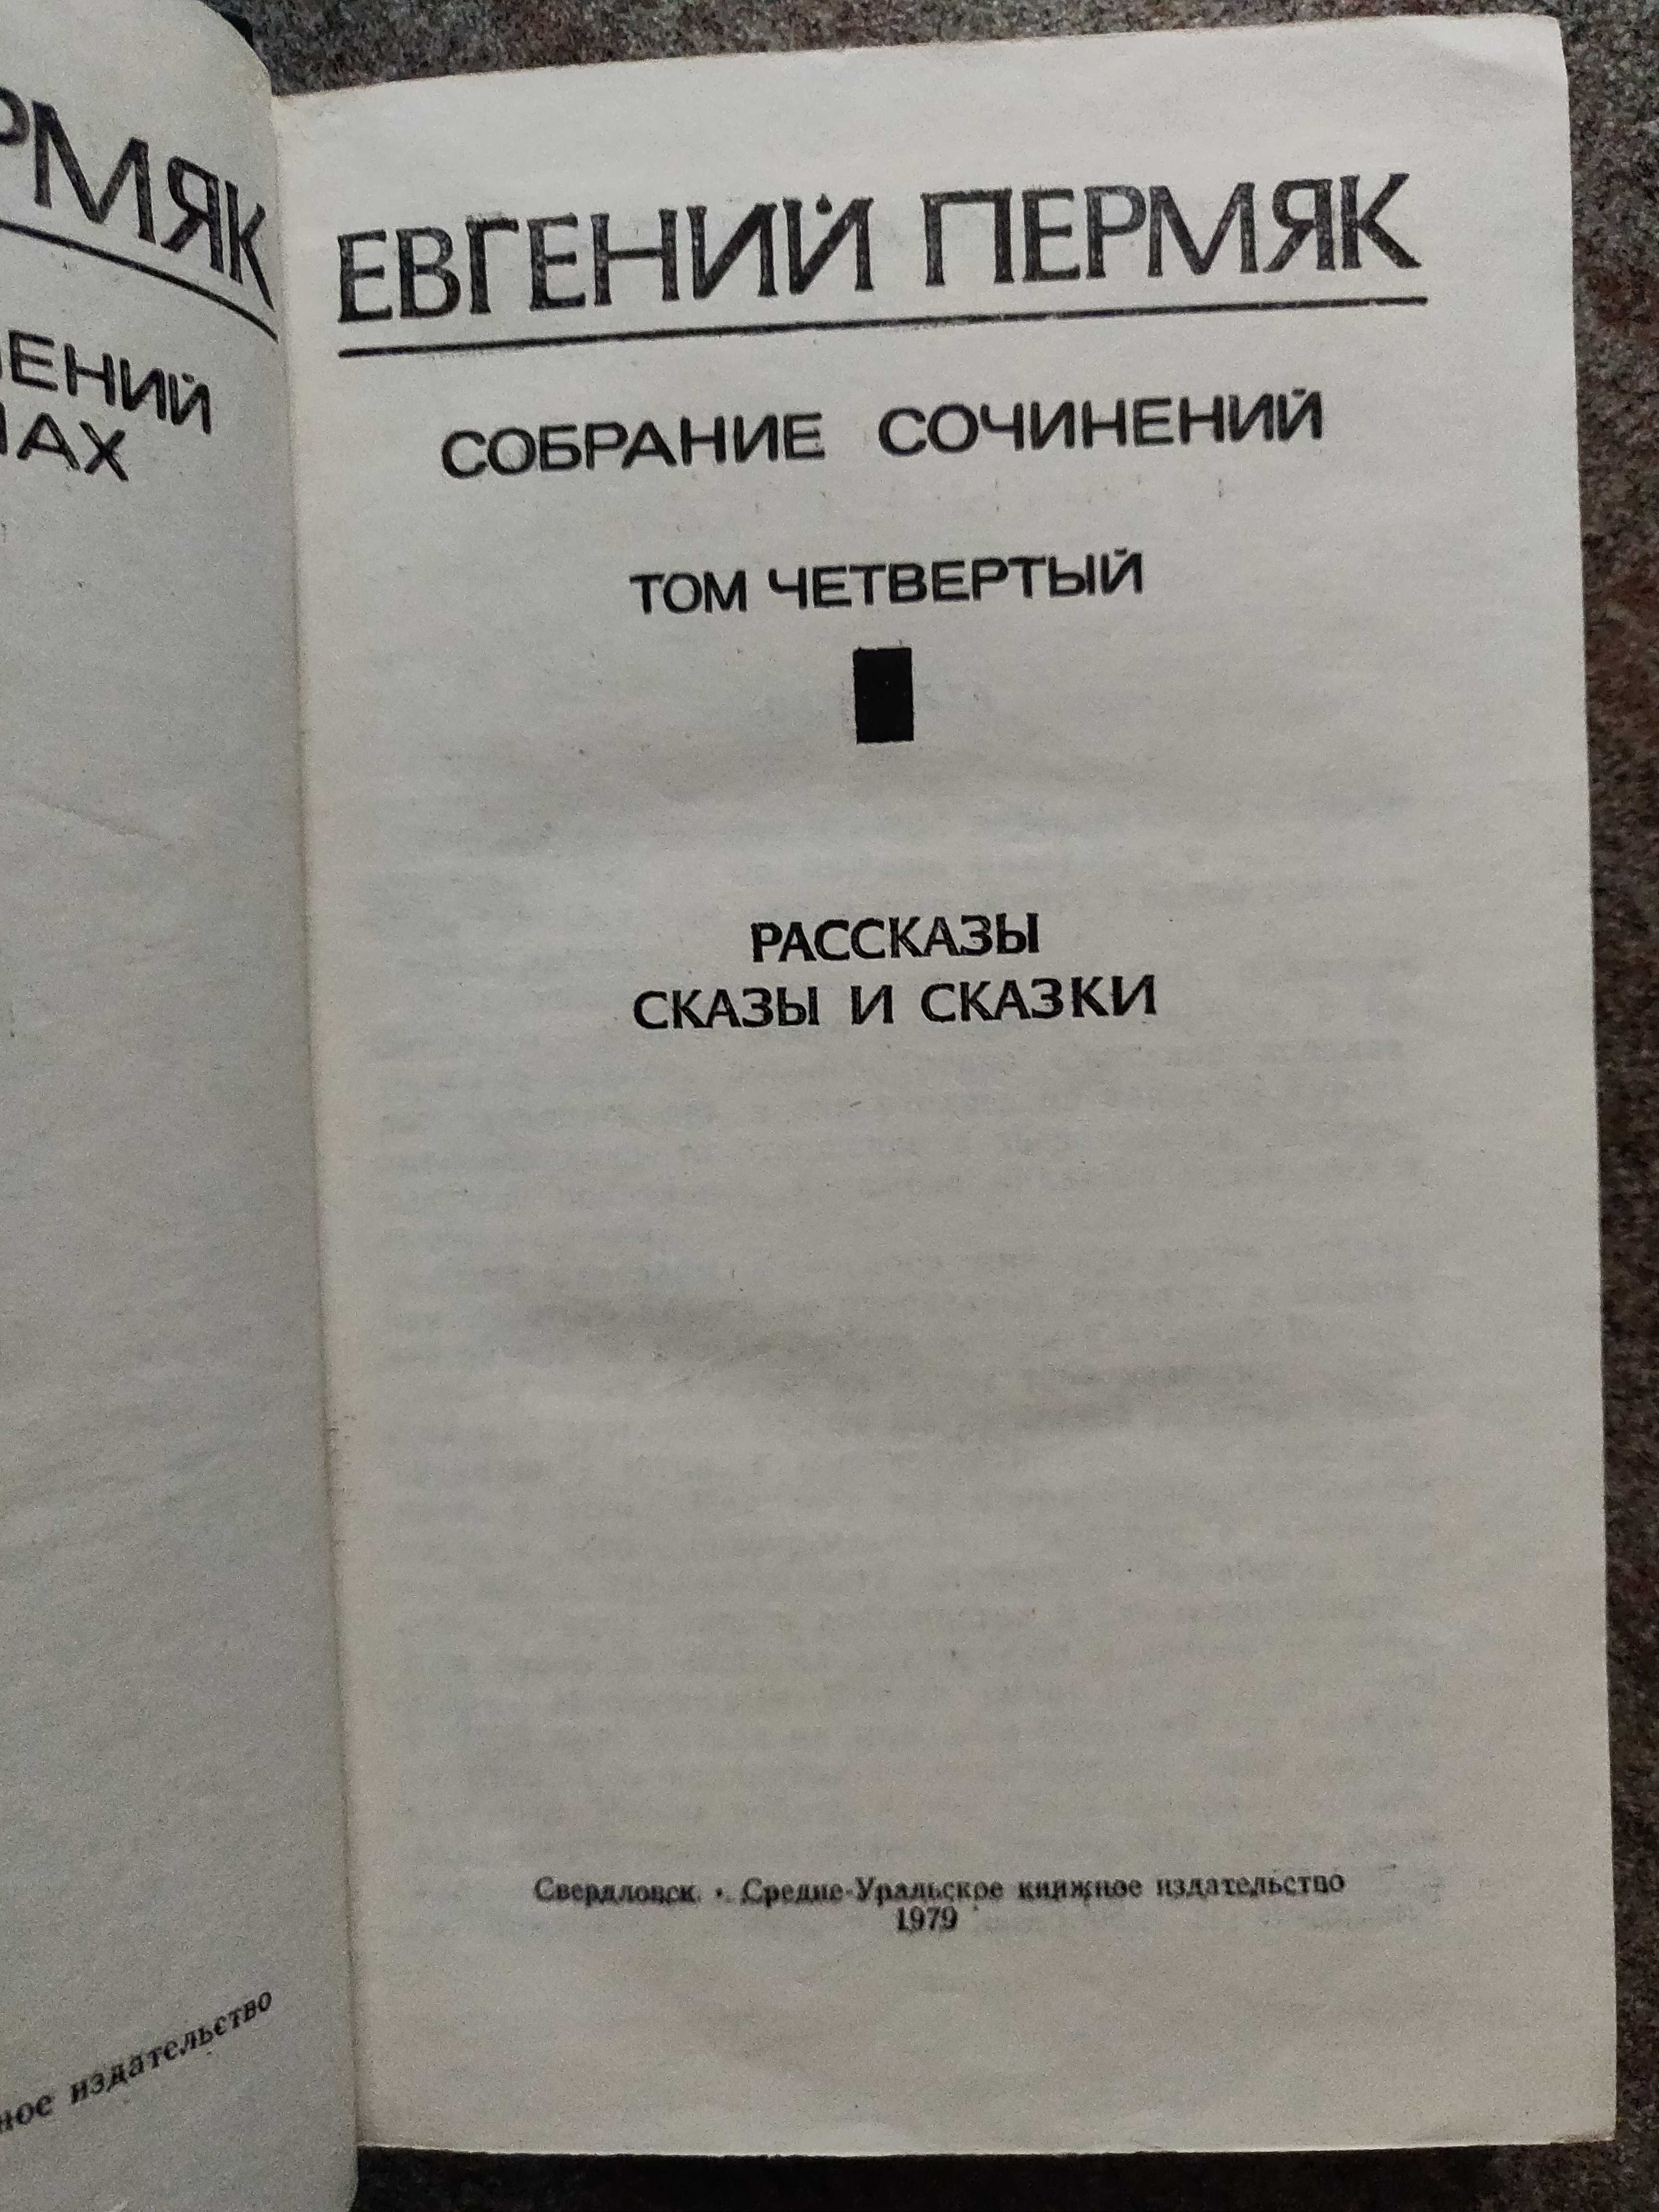 Пермяк Евгений собрание 4 томах 1977 г. идеальное  состояние